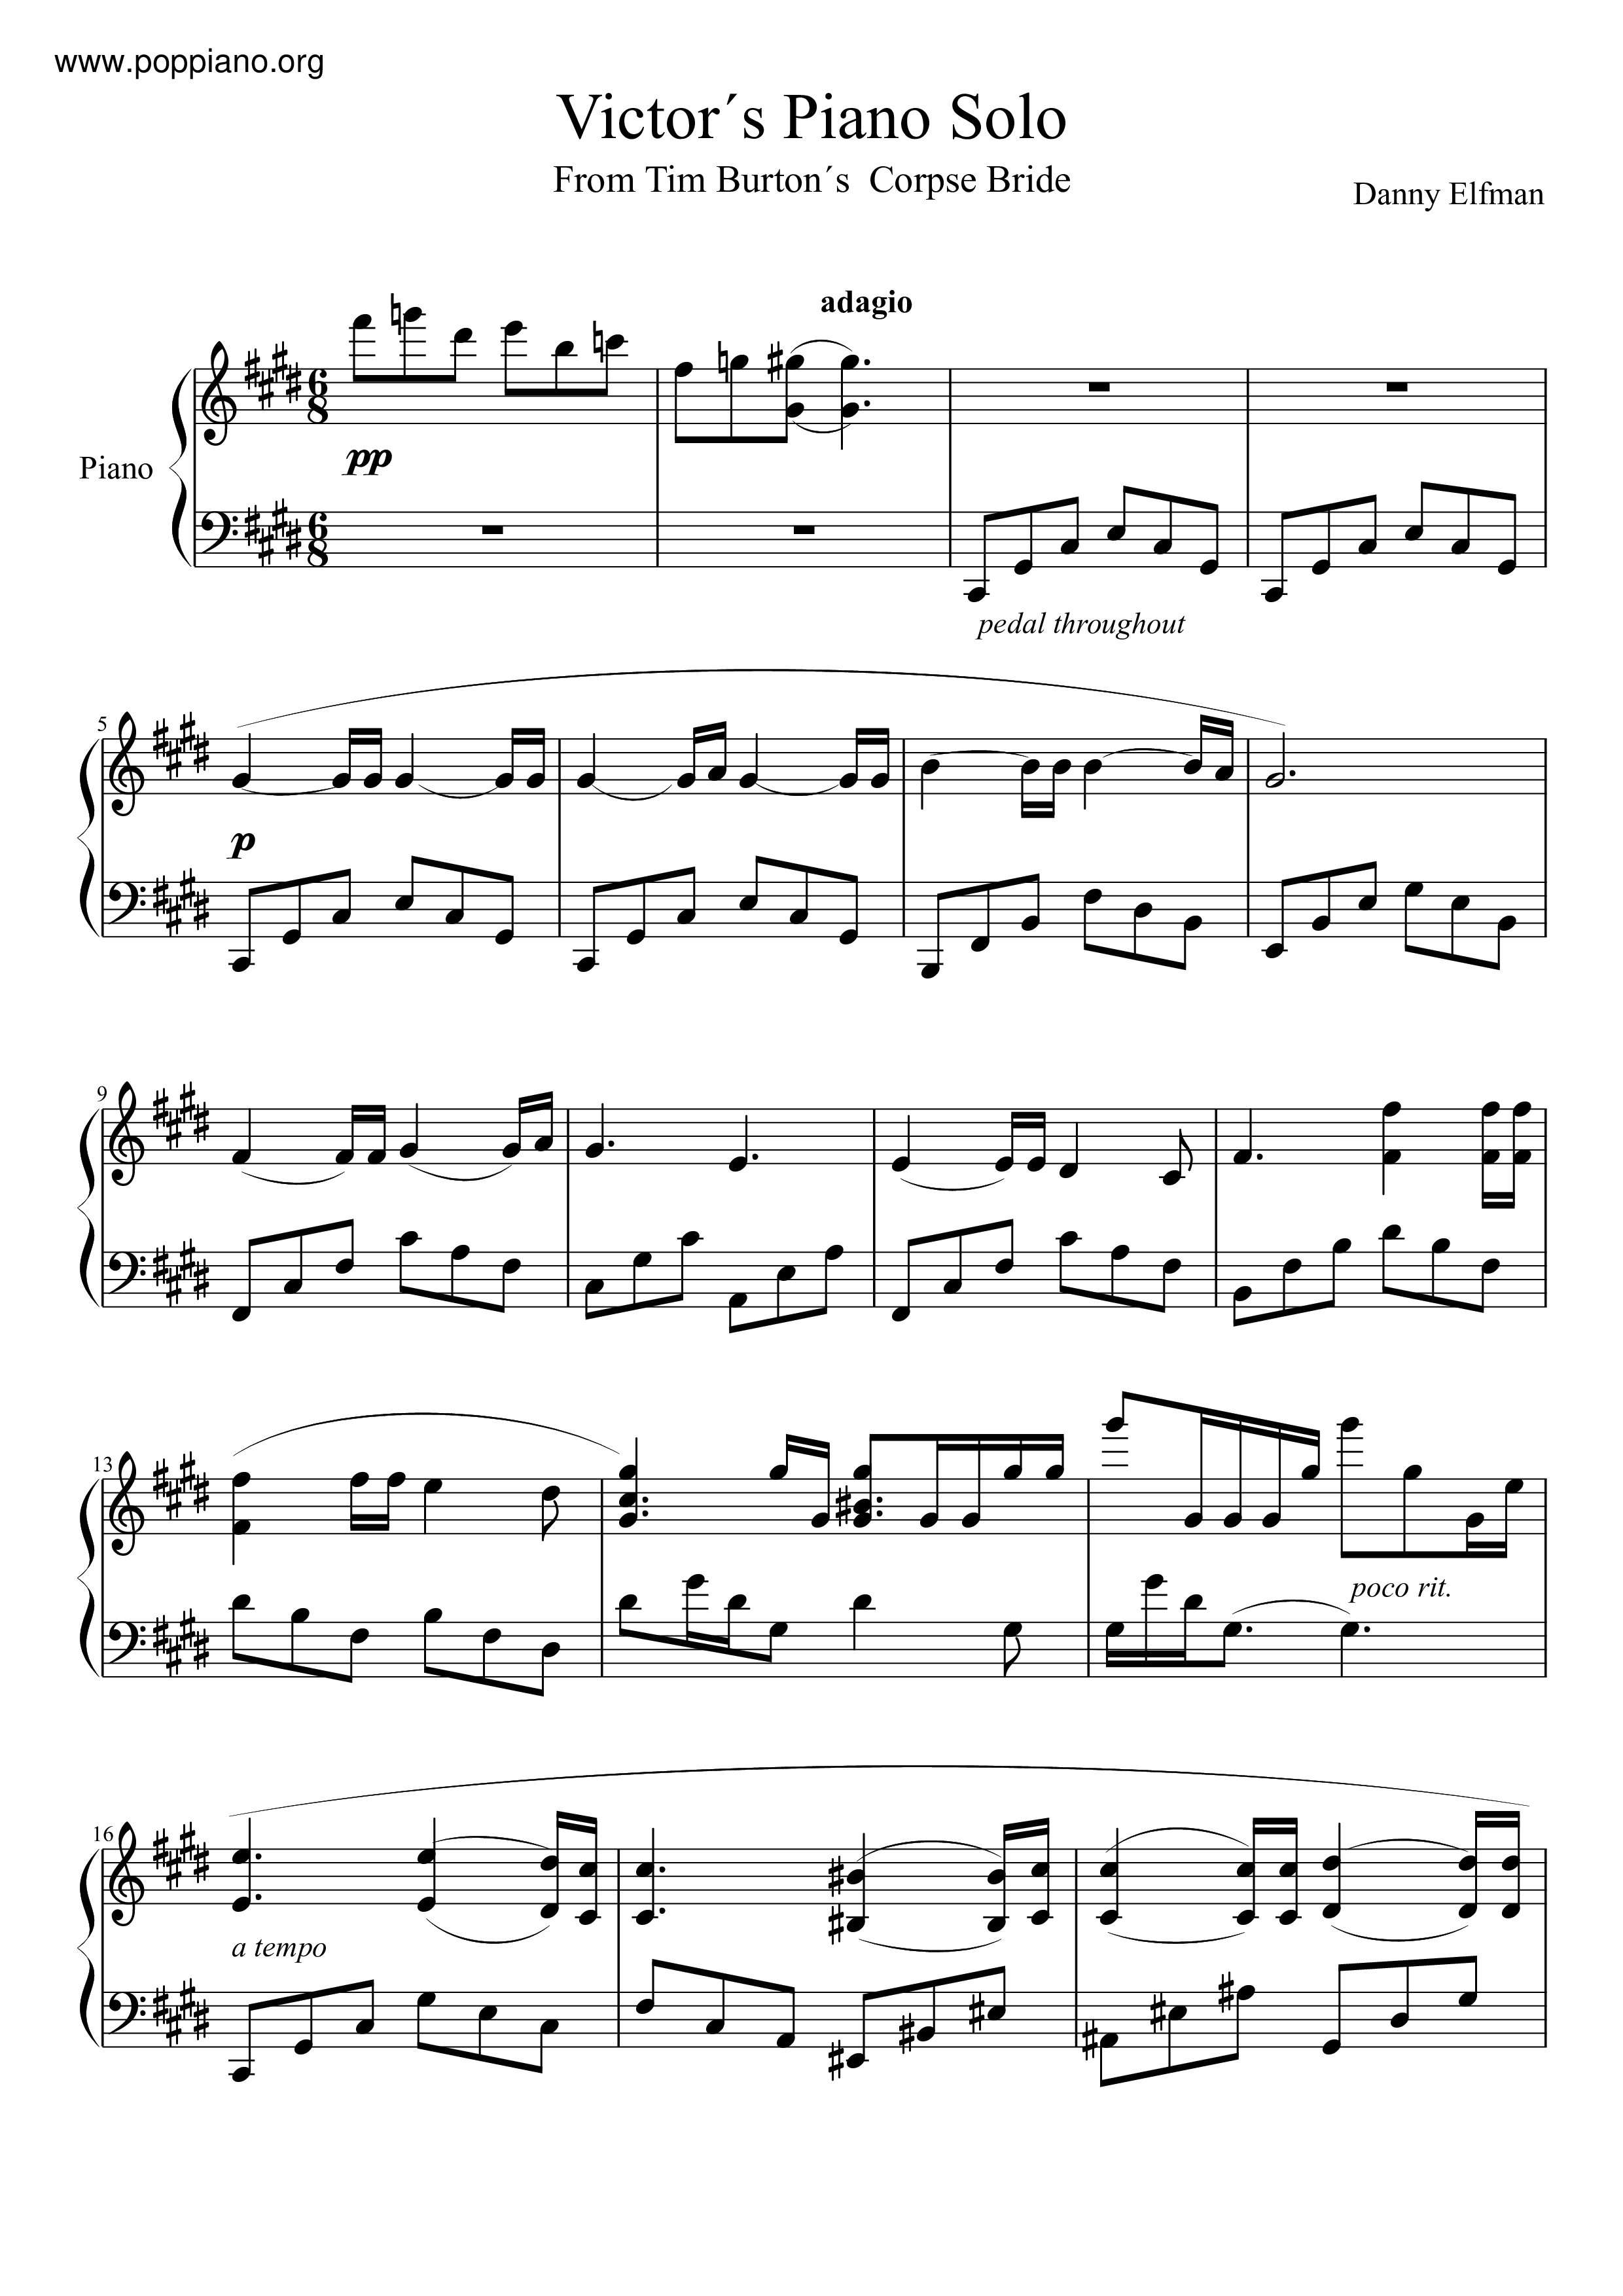 Tim Burton's Corpse Bride - Victor's Piano Solo琴谱